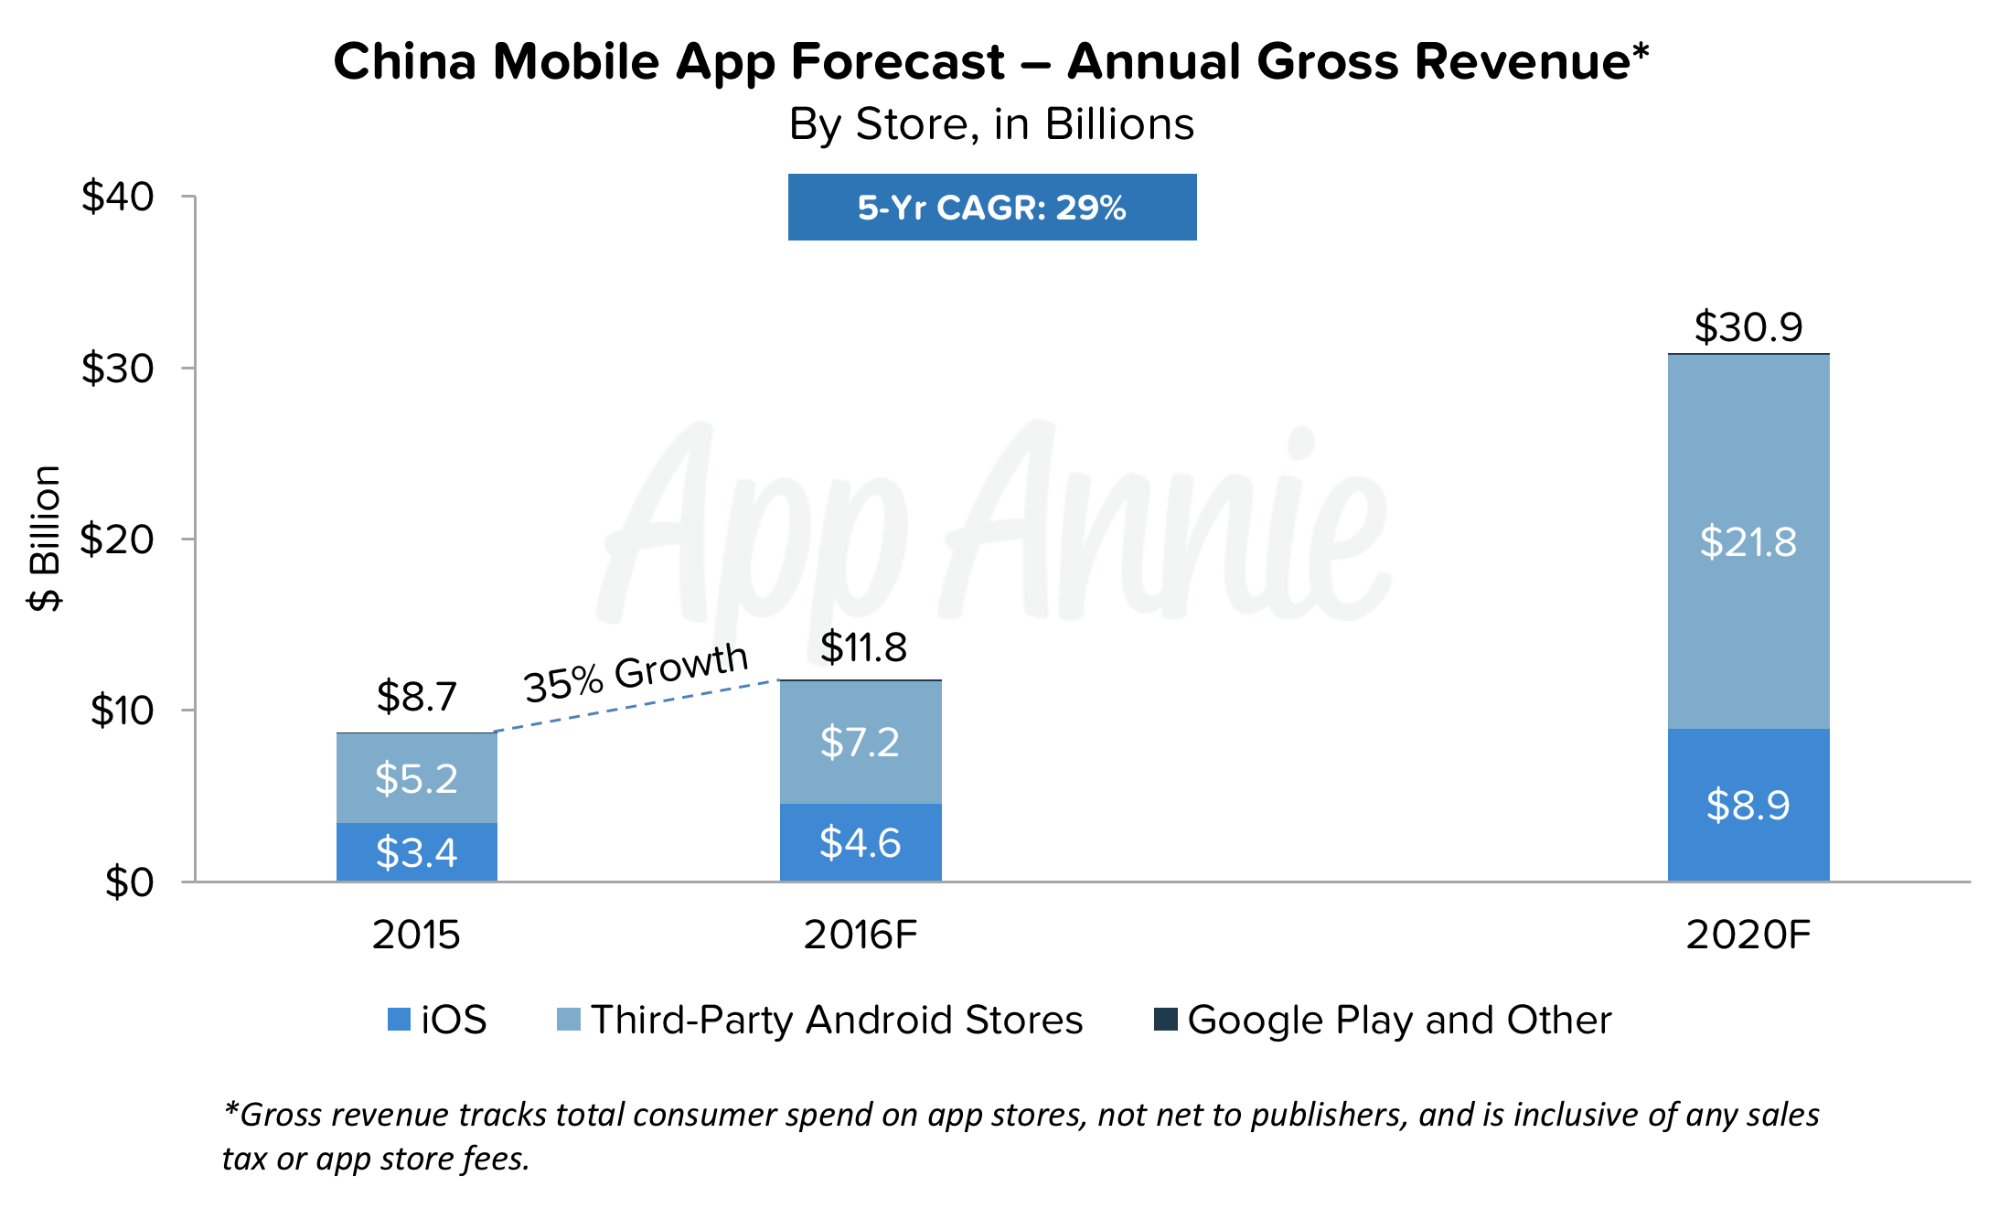 China Mobile App Forecast Gross Revenue